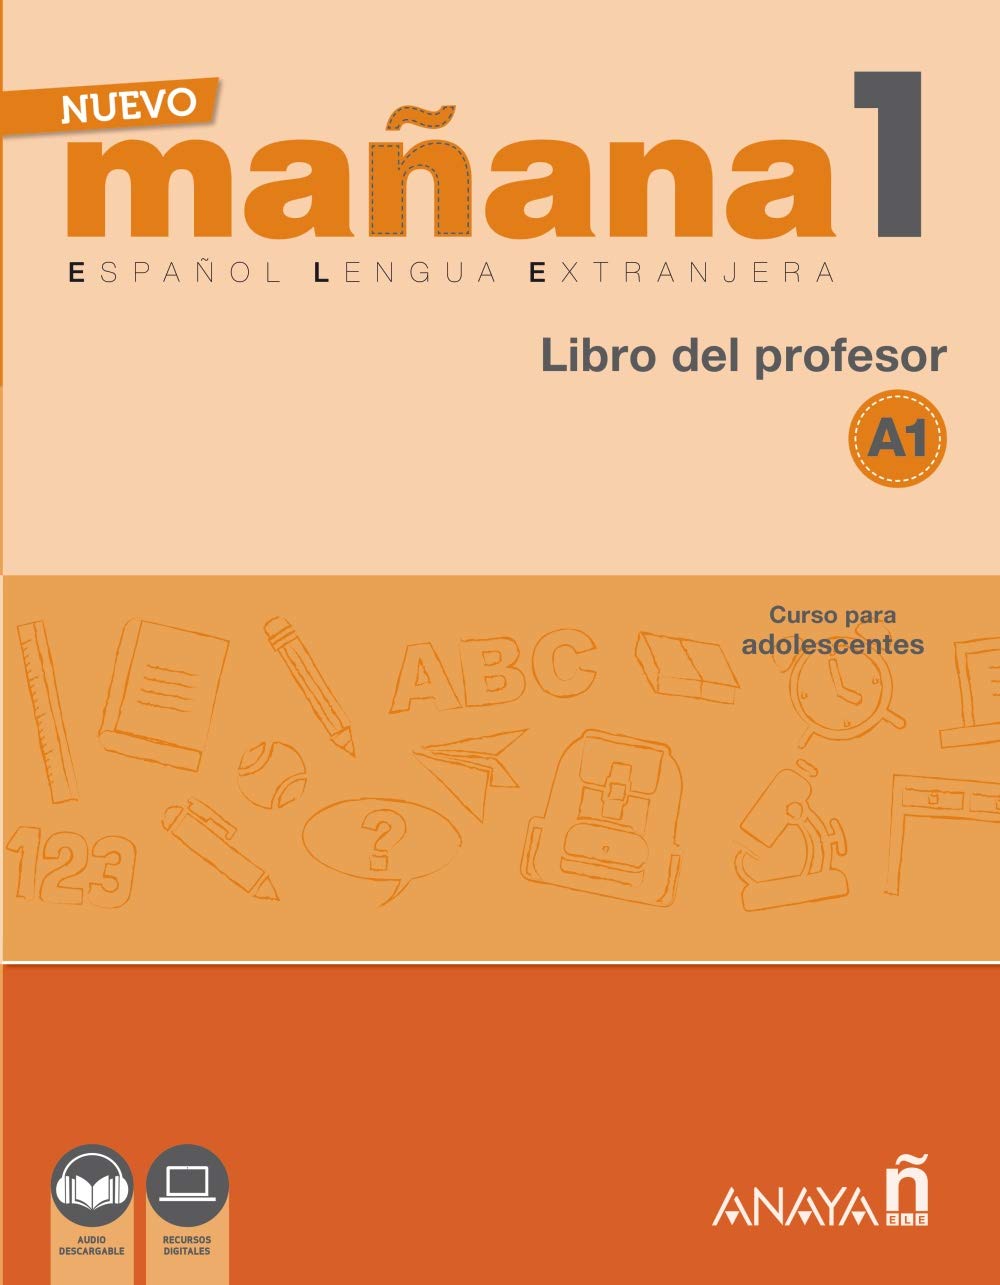 NUEVO MANANA 1 Libro del profesor + audio download